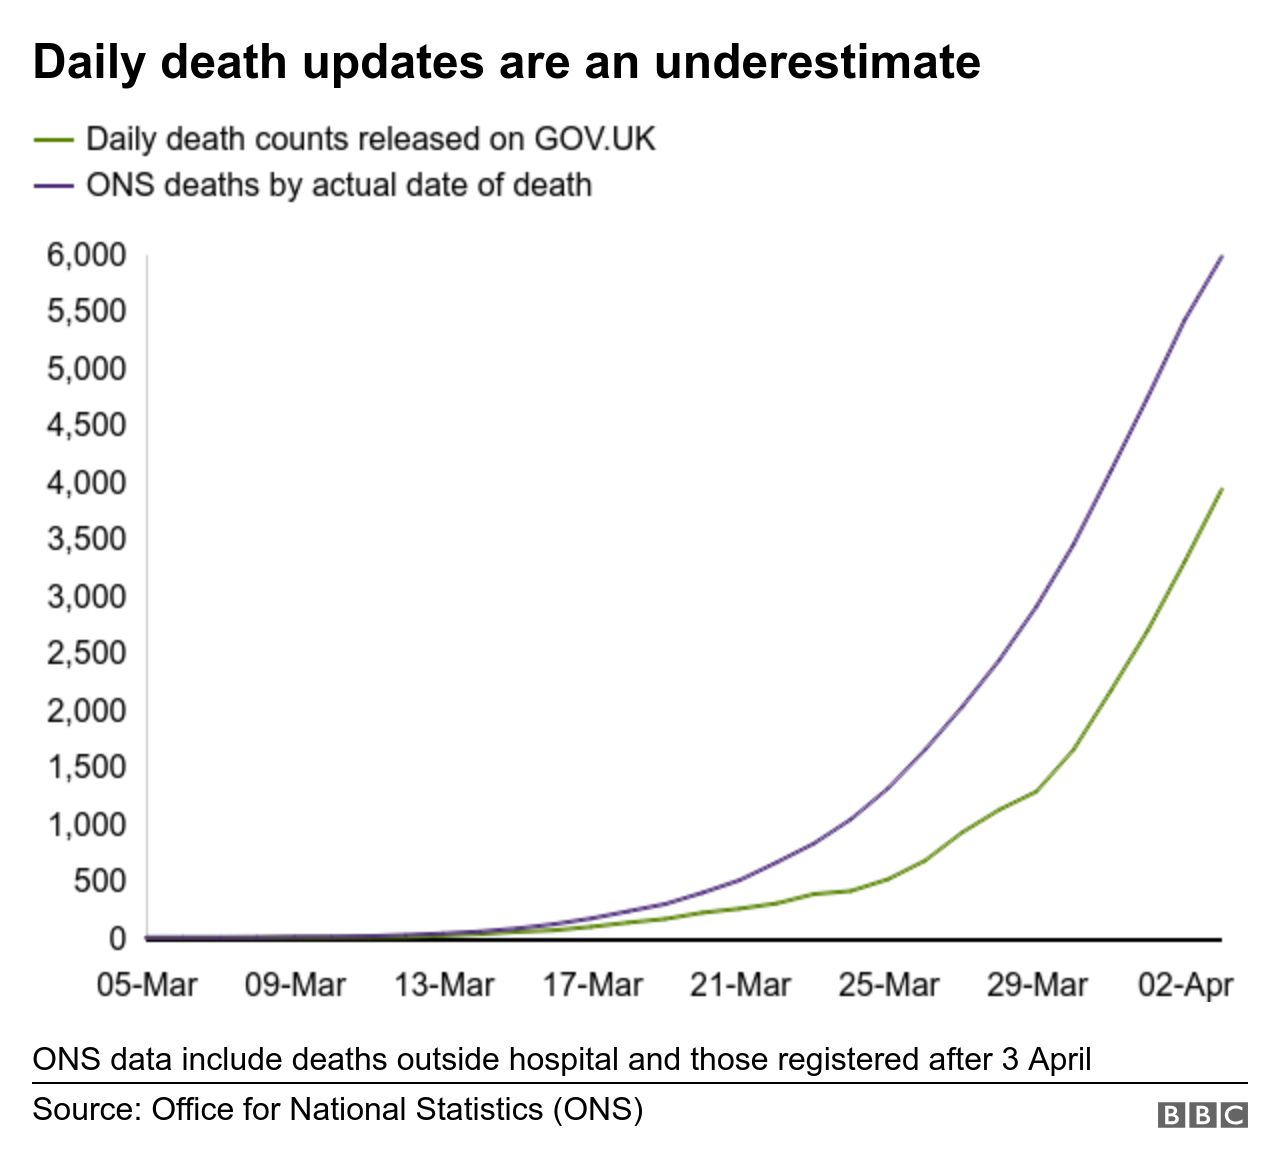 ежедневные обновления данных о смерти занижены, так как они исключают случаи смерти вне больницы и могут быть задержаны в отчетности